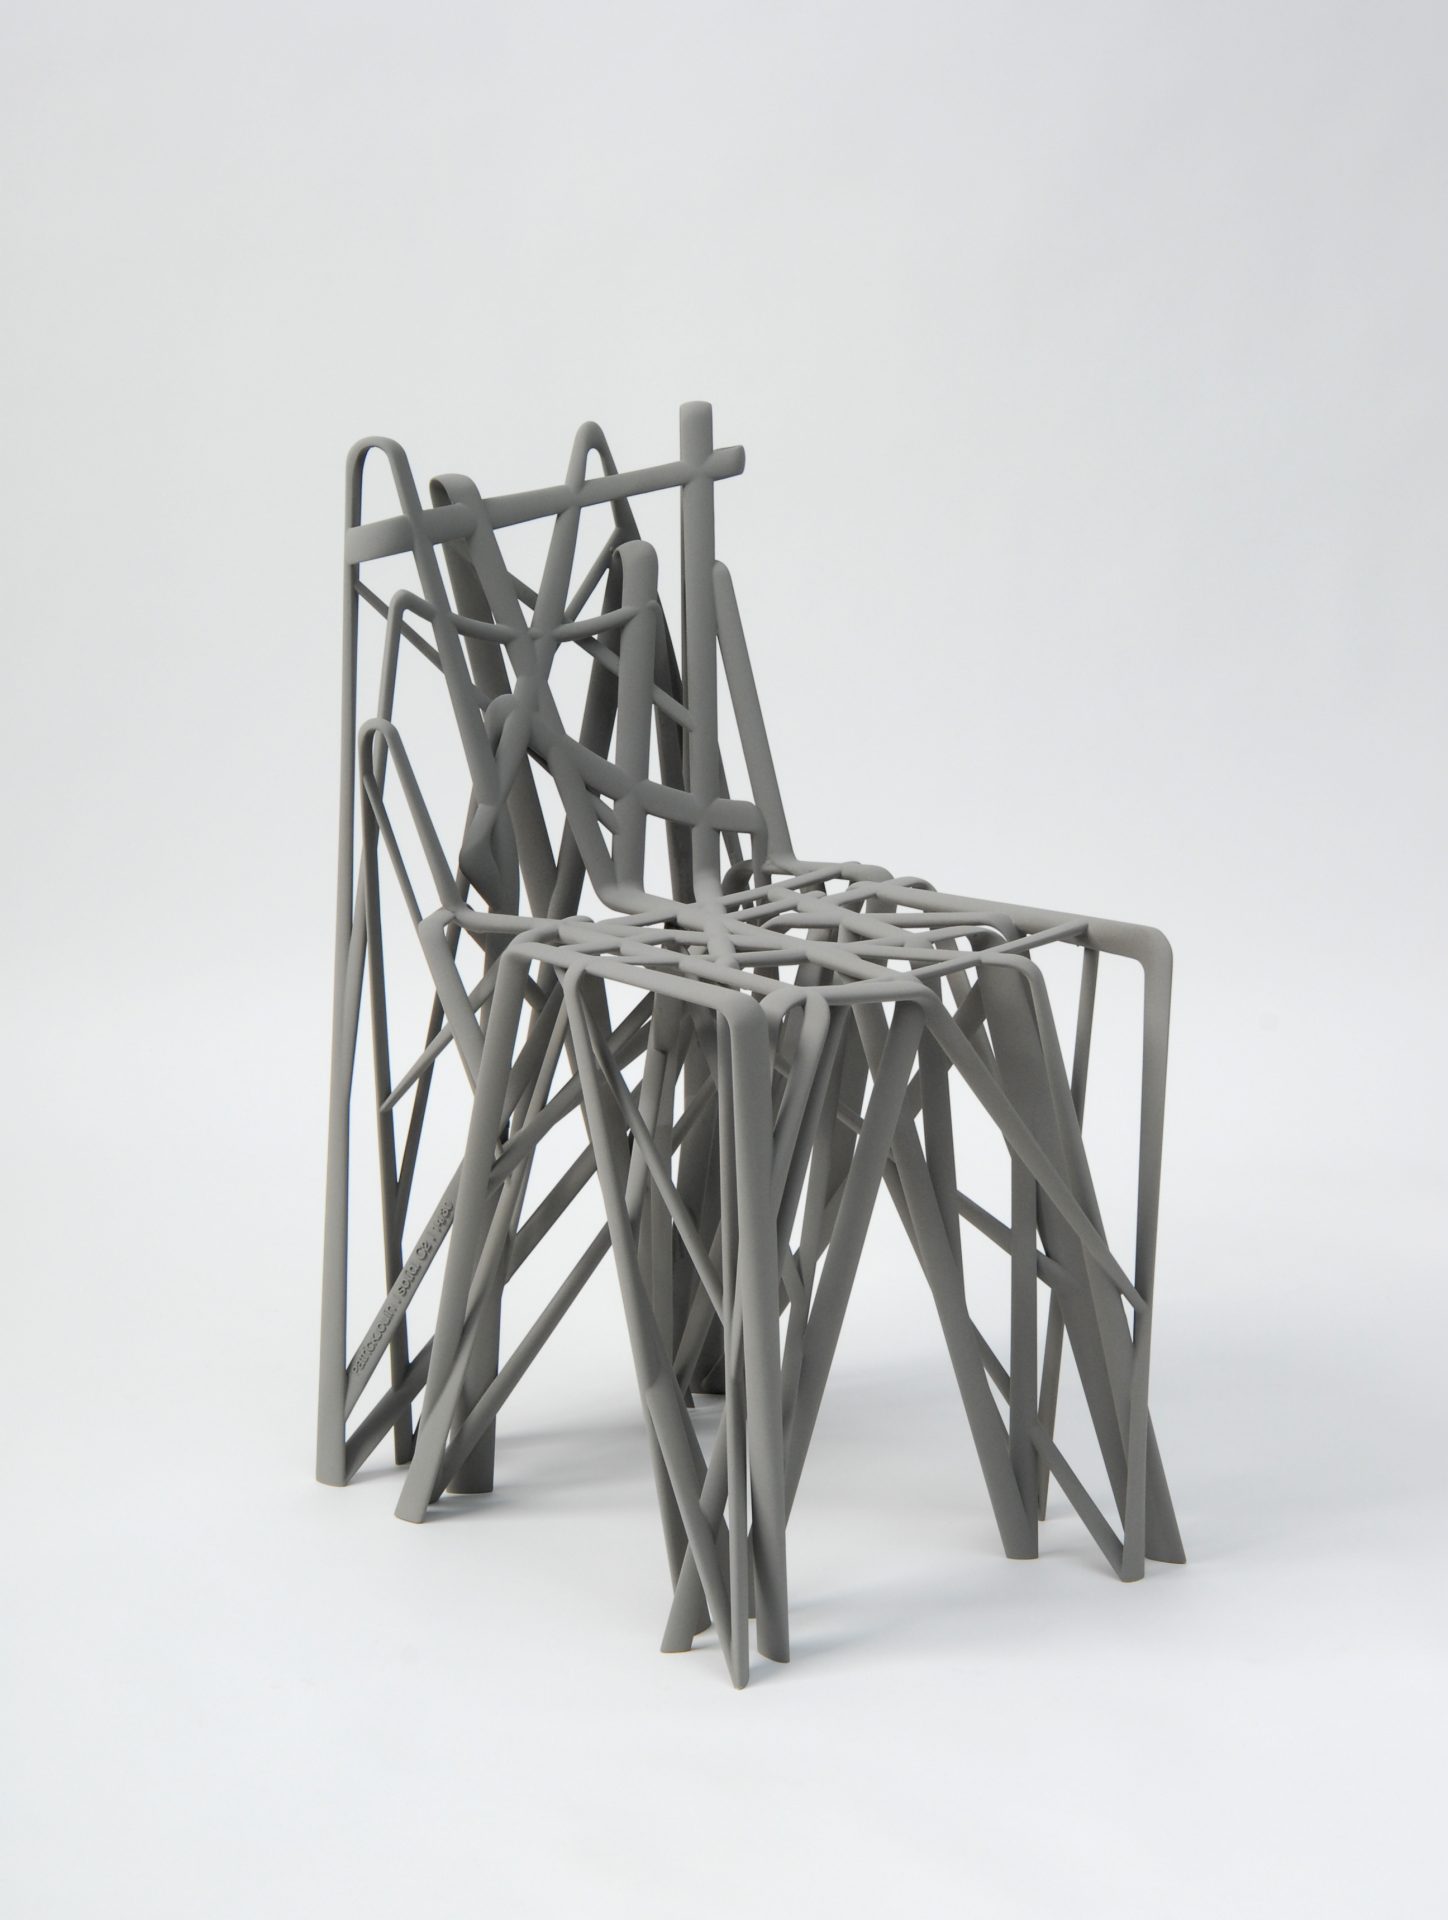 Dreiviertelansicht eines 3D-gedruckten Stuhls